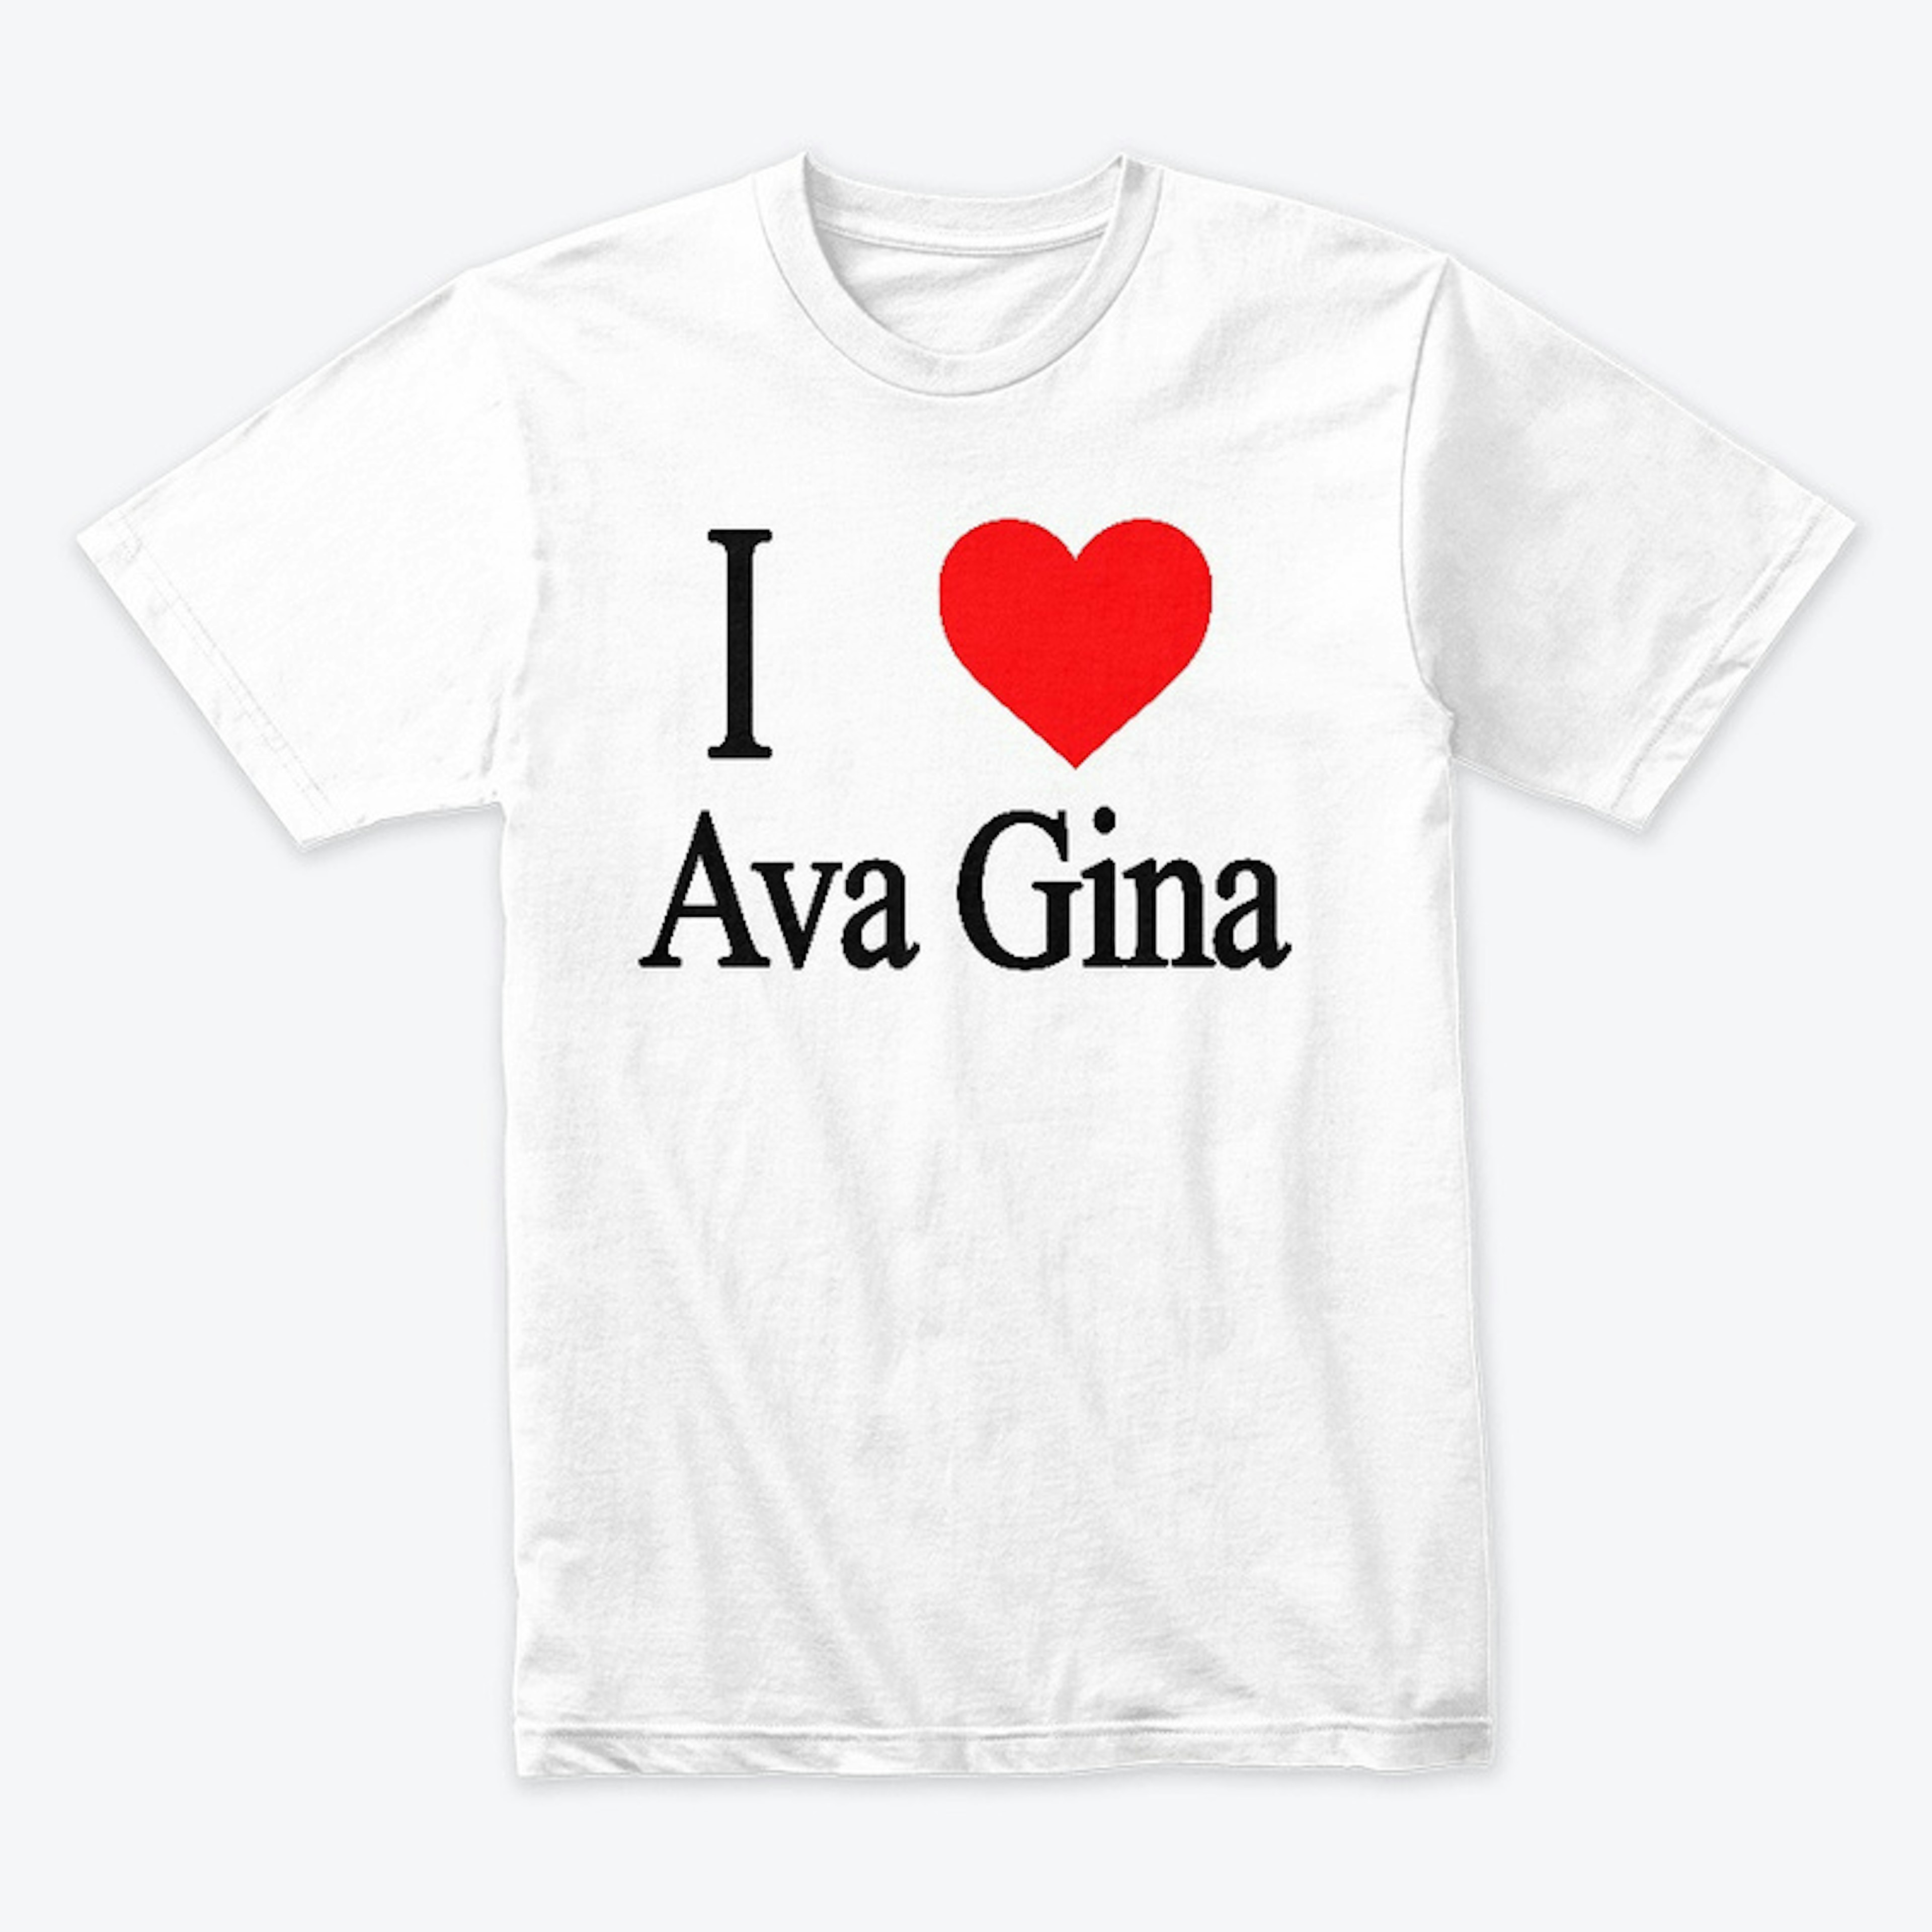 Puppetics "I Love Ava Gina" T-Shirt